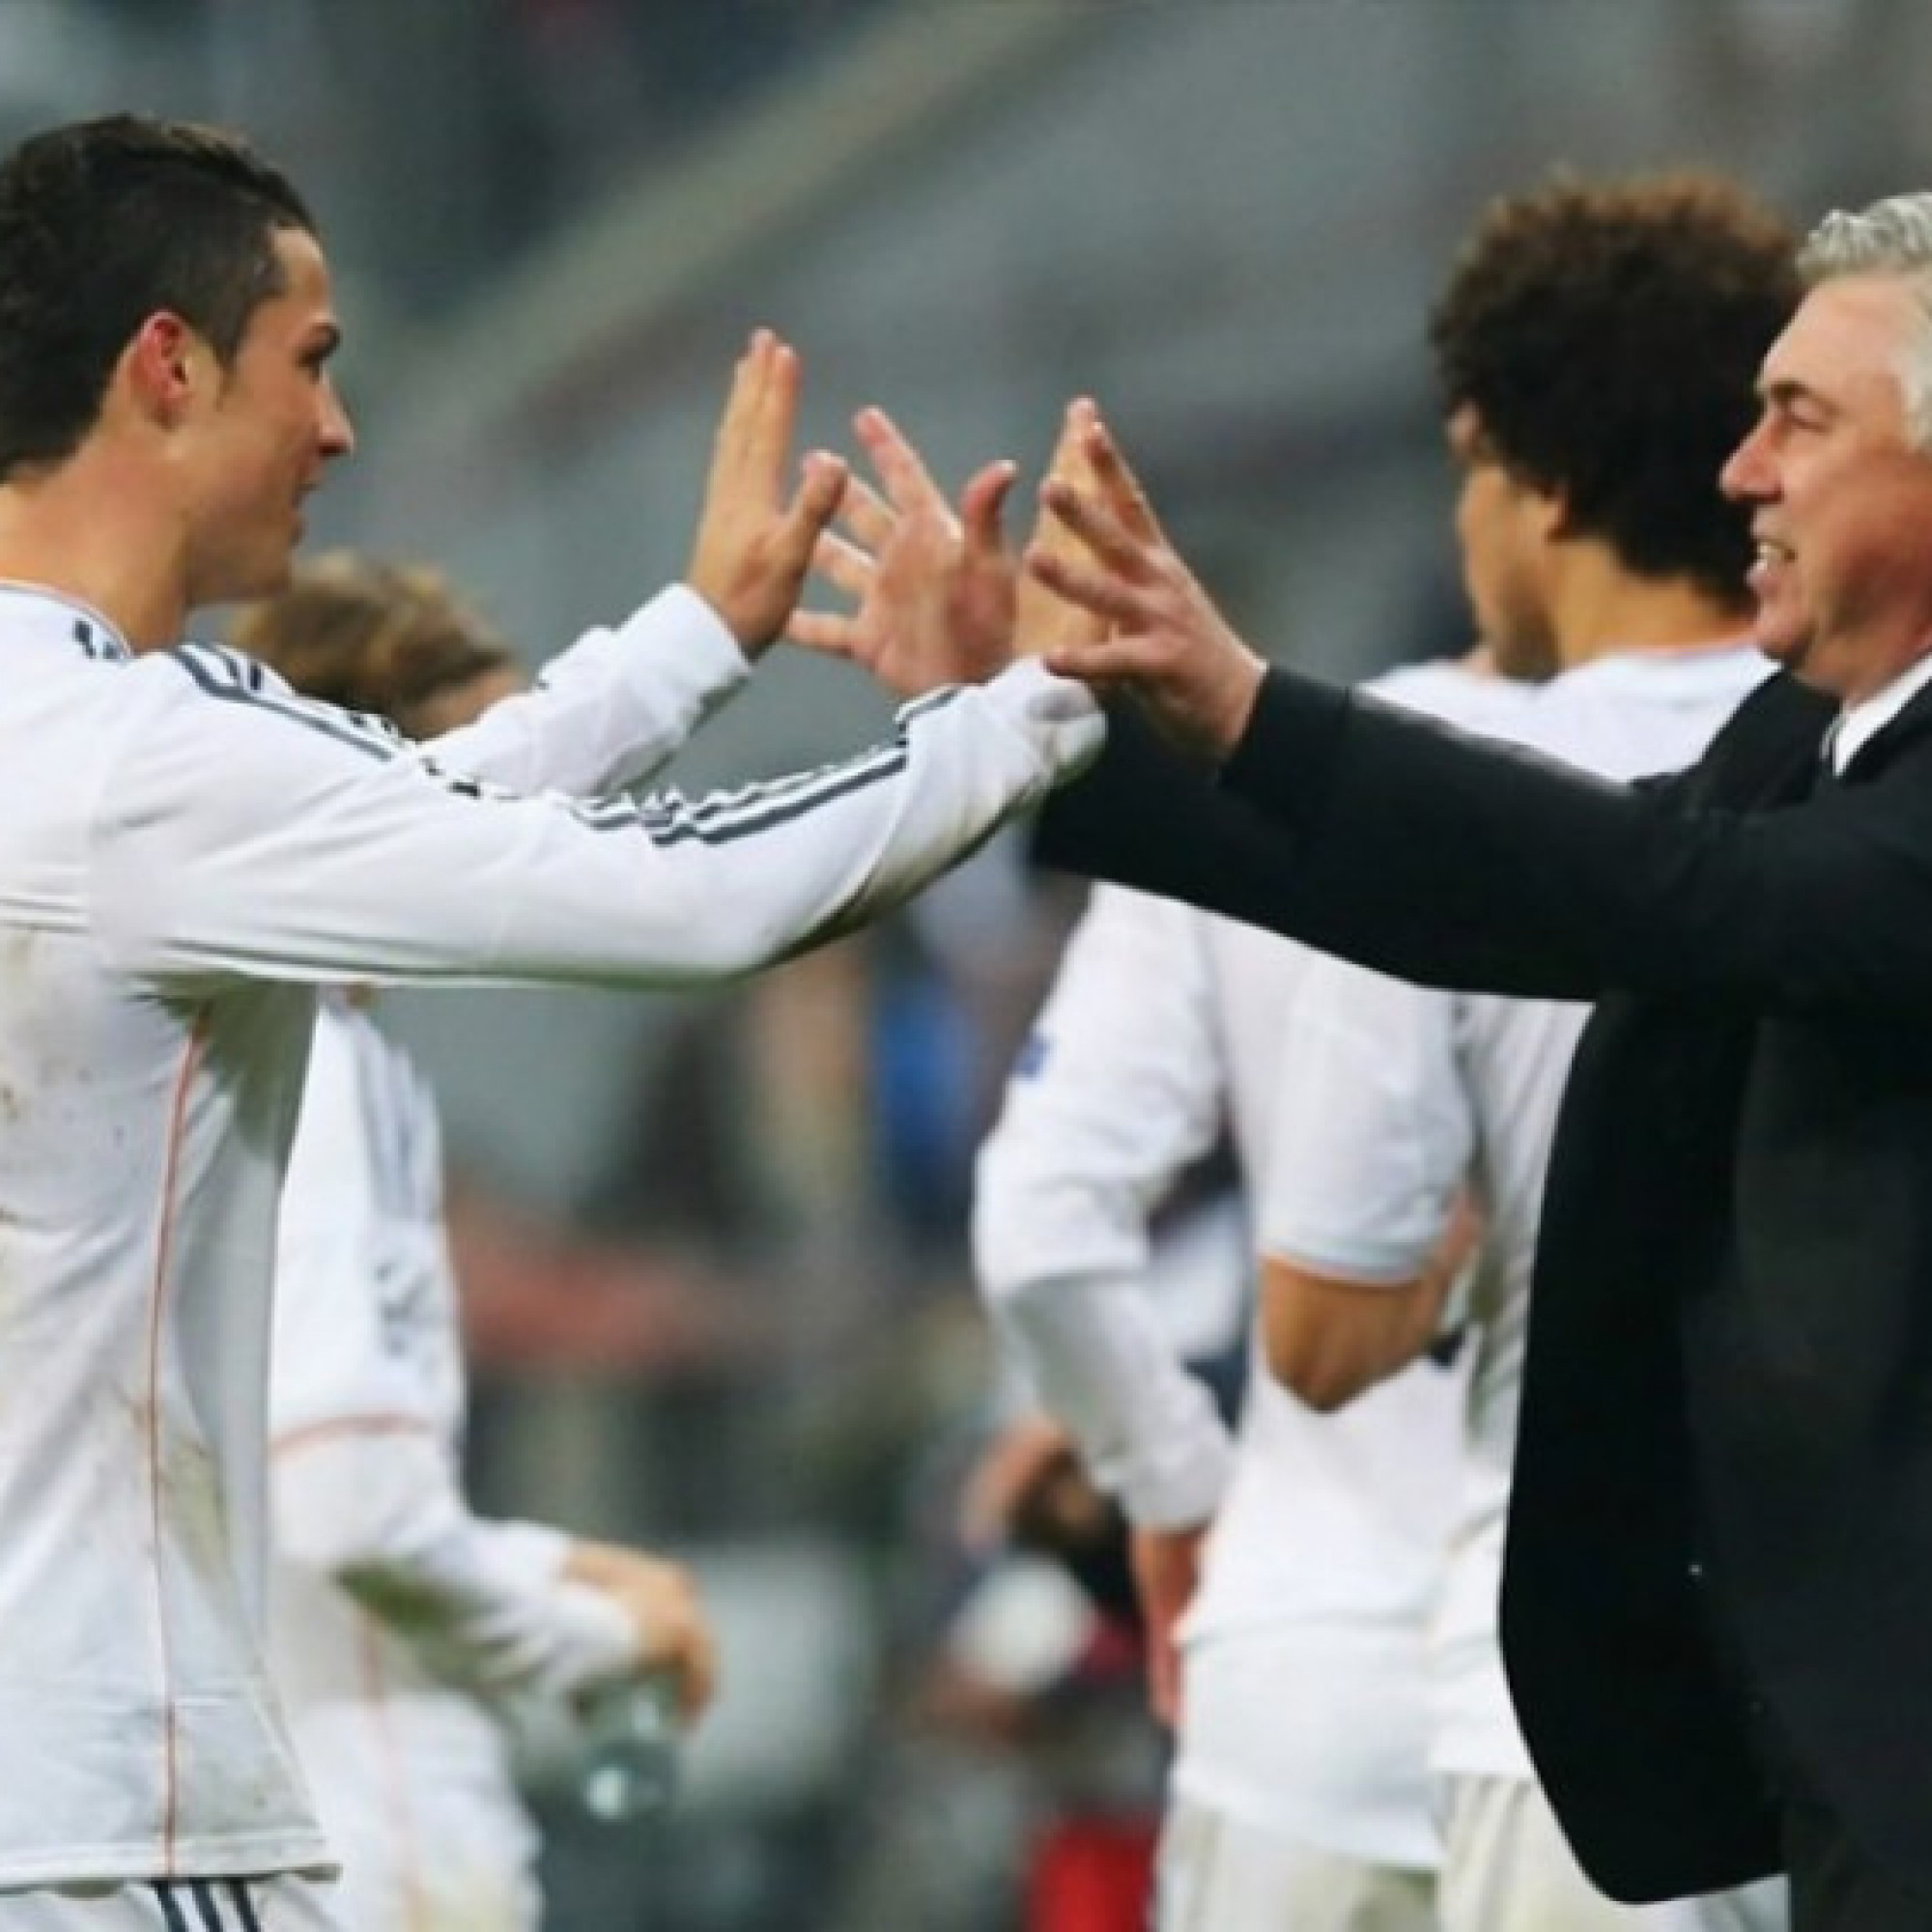  - Thư hùng Real Madrid - Bayern Munich Cúp C1: "Hùm xám" ám ảnh vì Ancelotti & Ronaldo